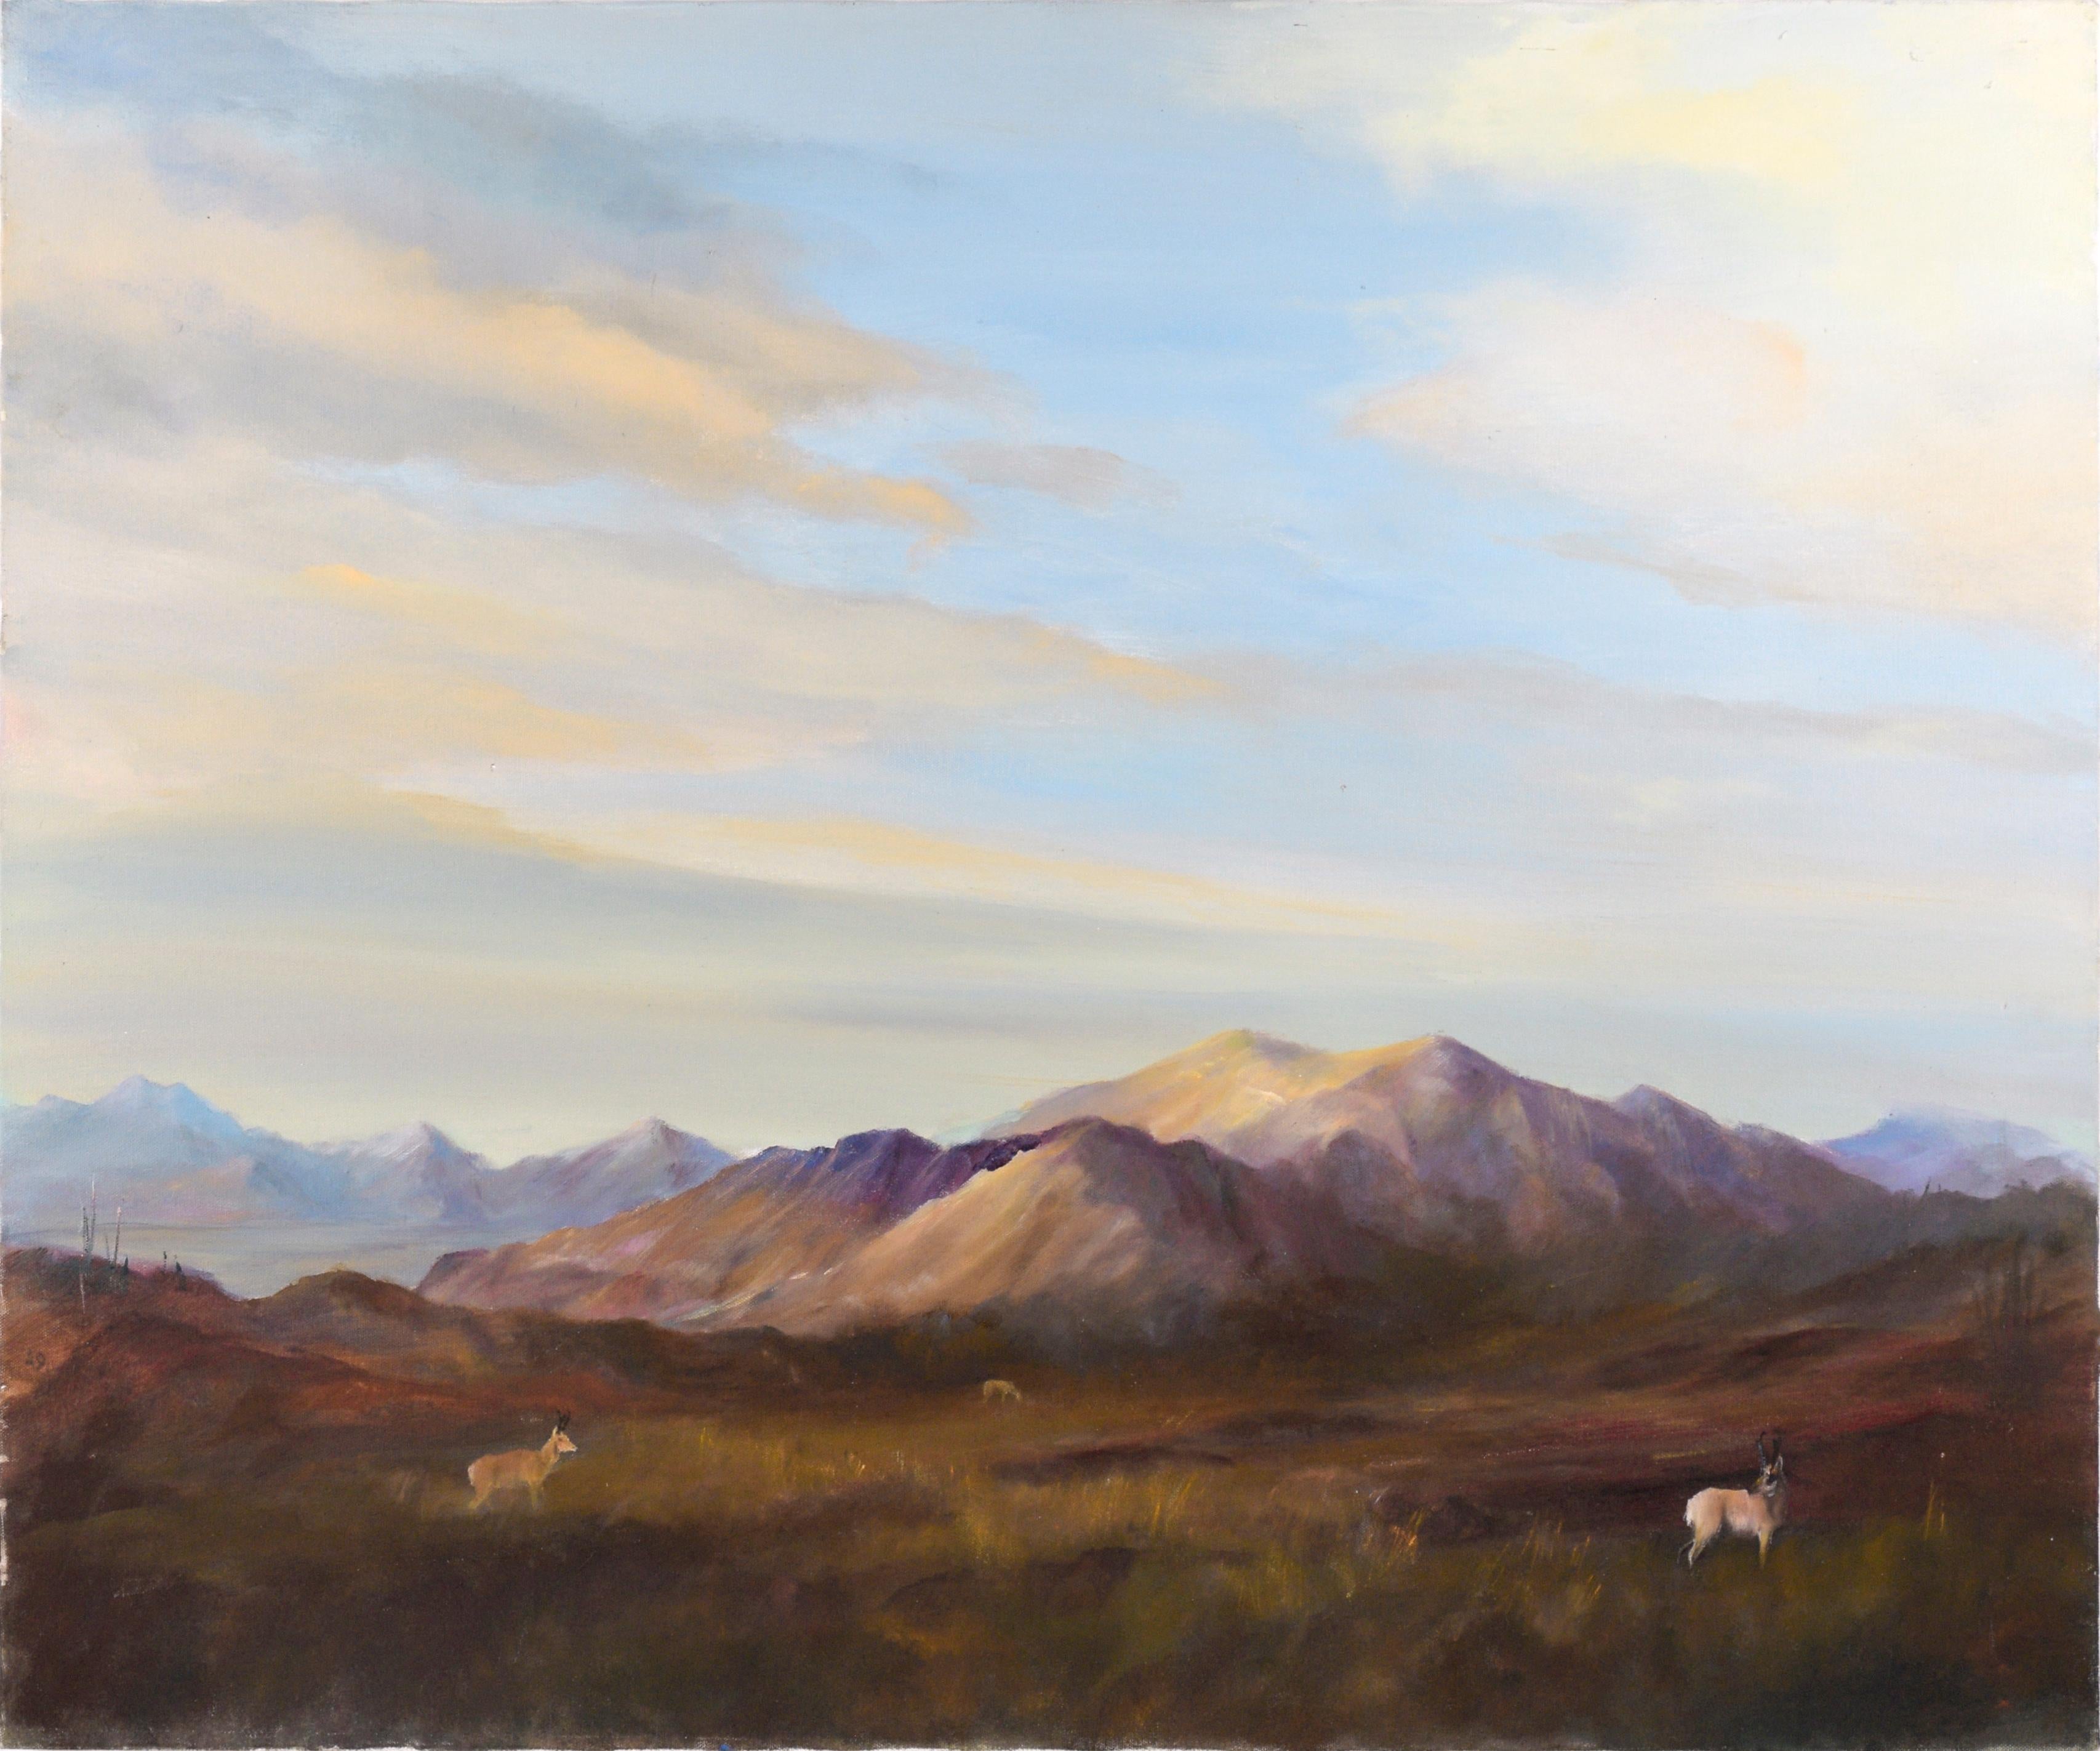 Landscape Painting Kenneth Lucas - Le cerf aux montagnes violettes - Paysage à l'huile sur toile